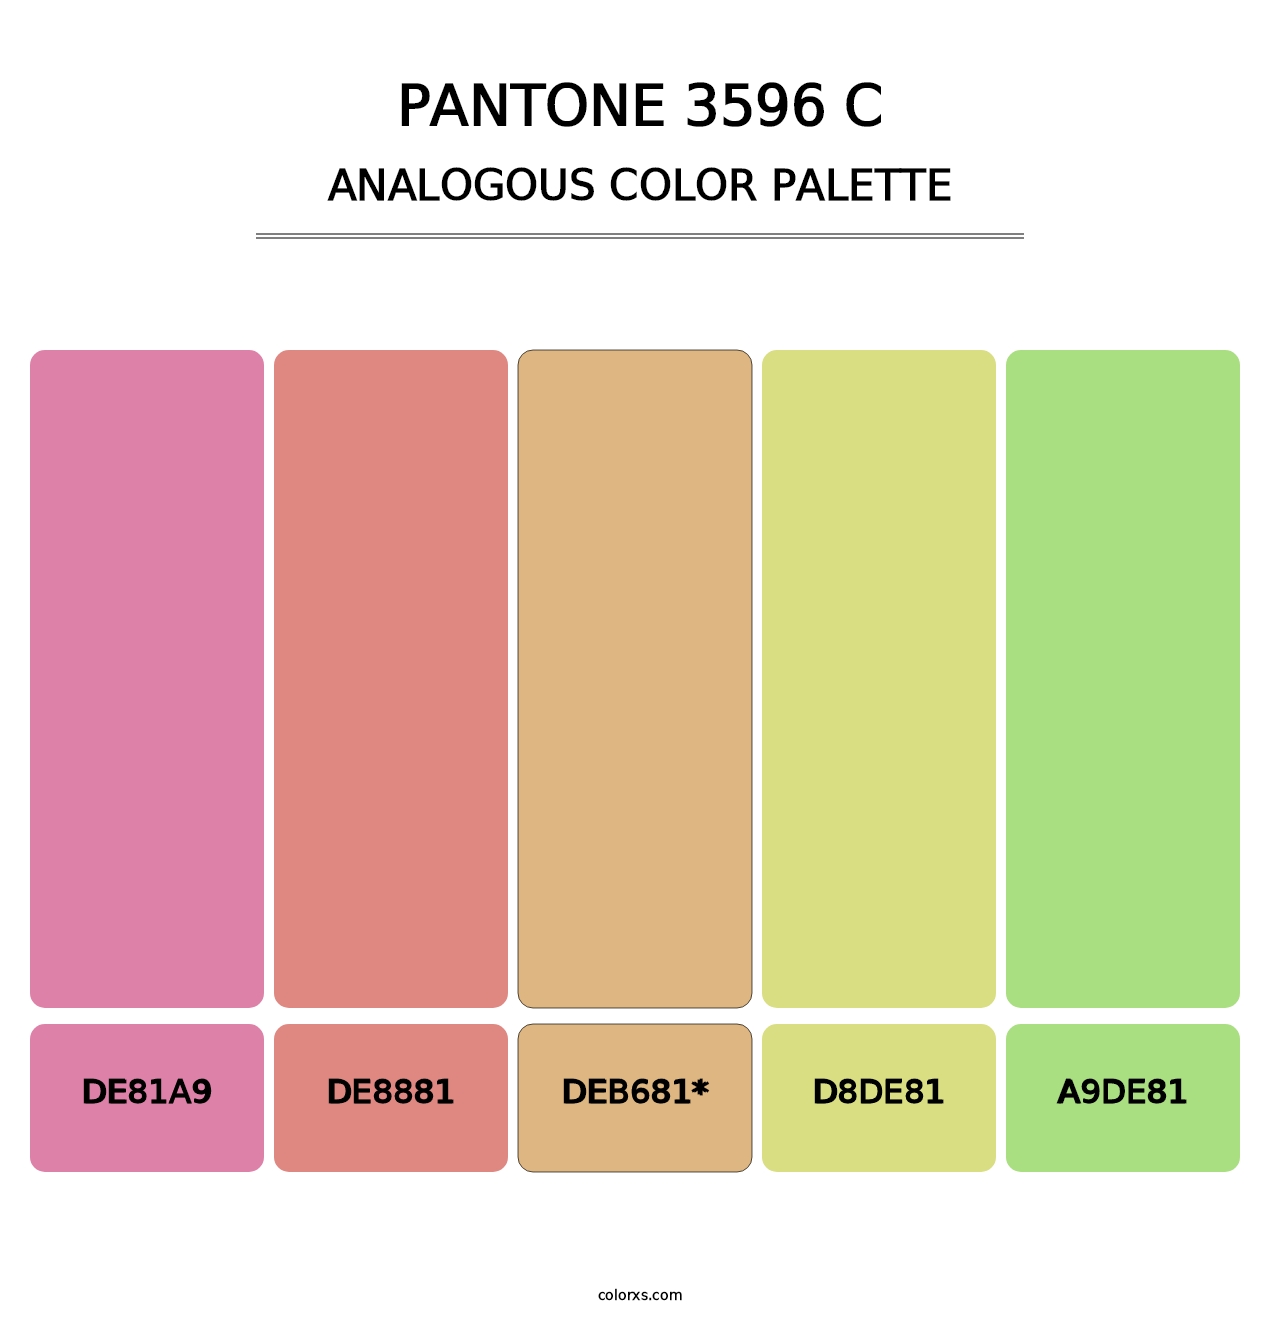 PANTONE 3596 C - Analogous Color Palette